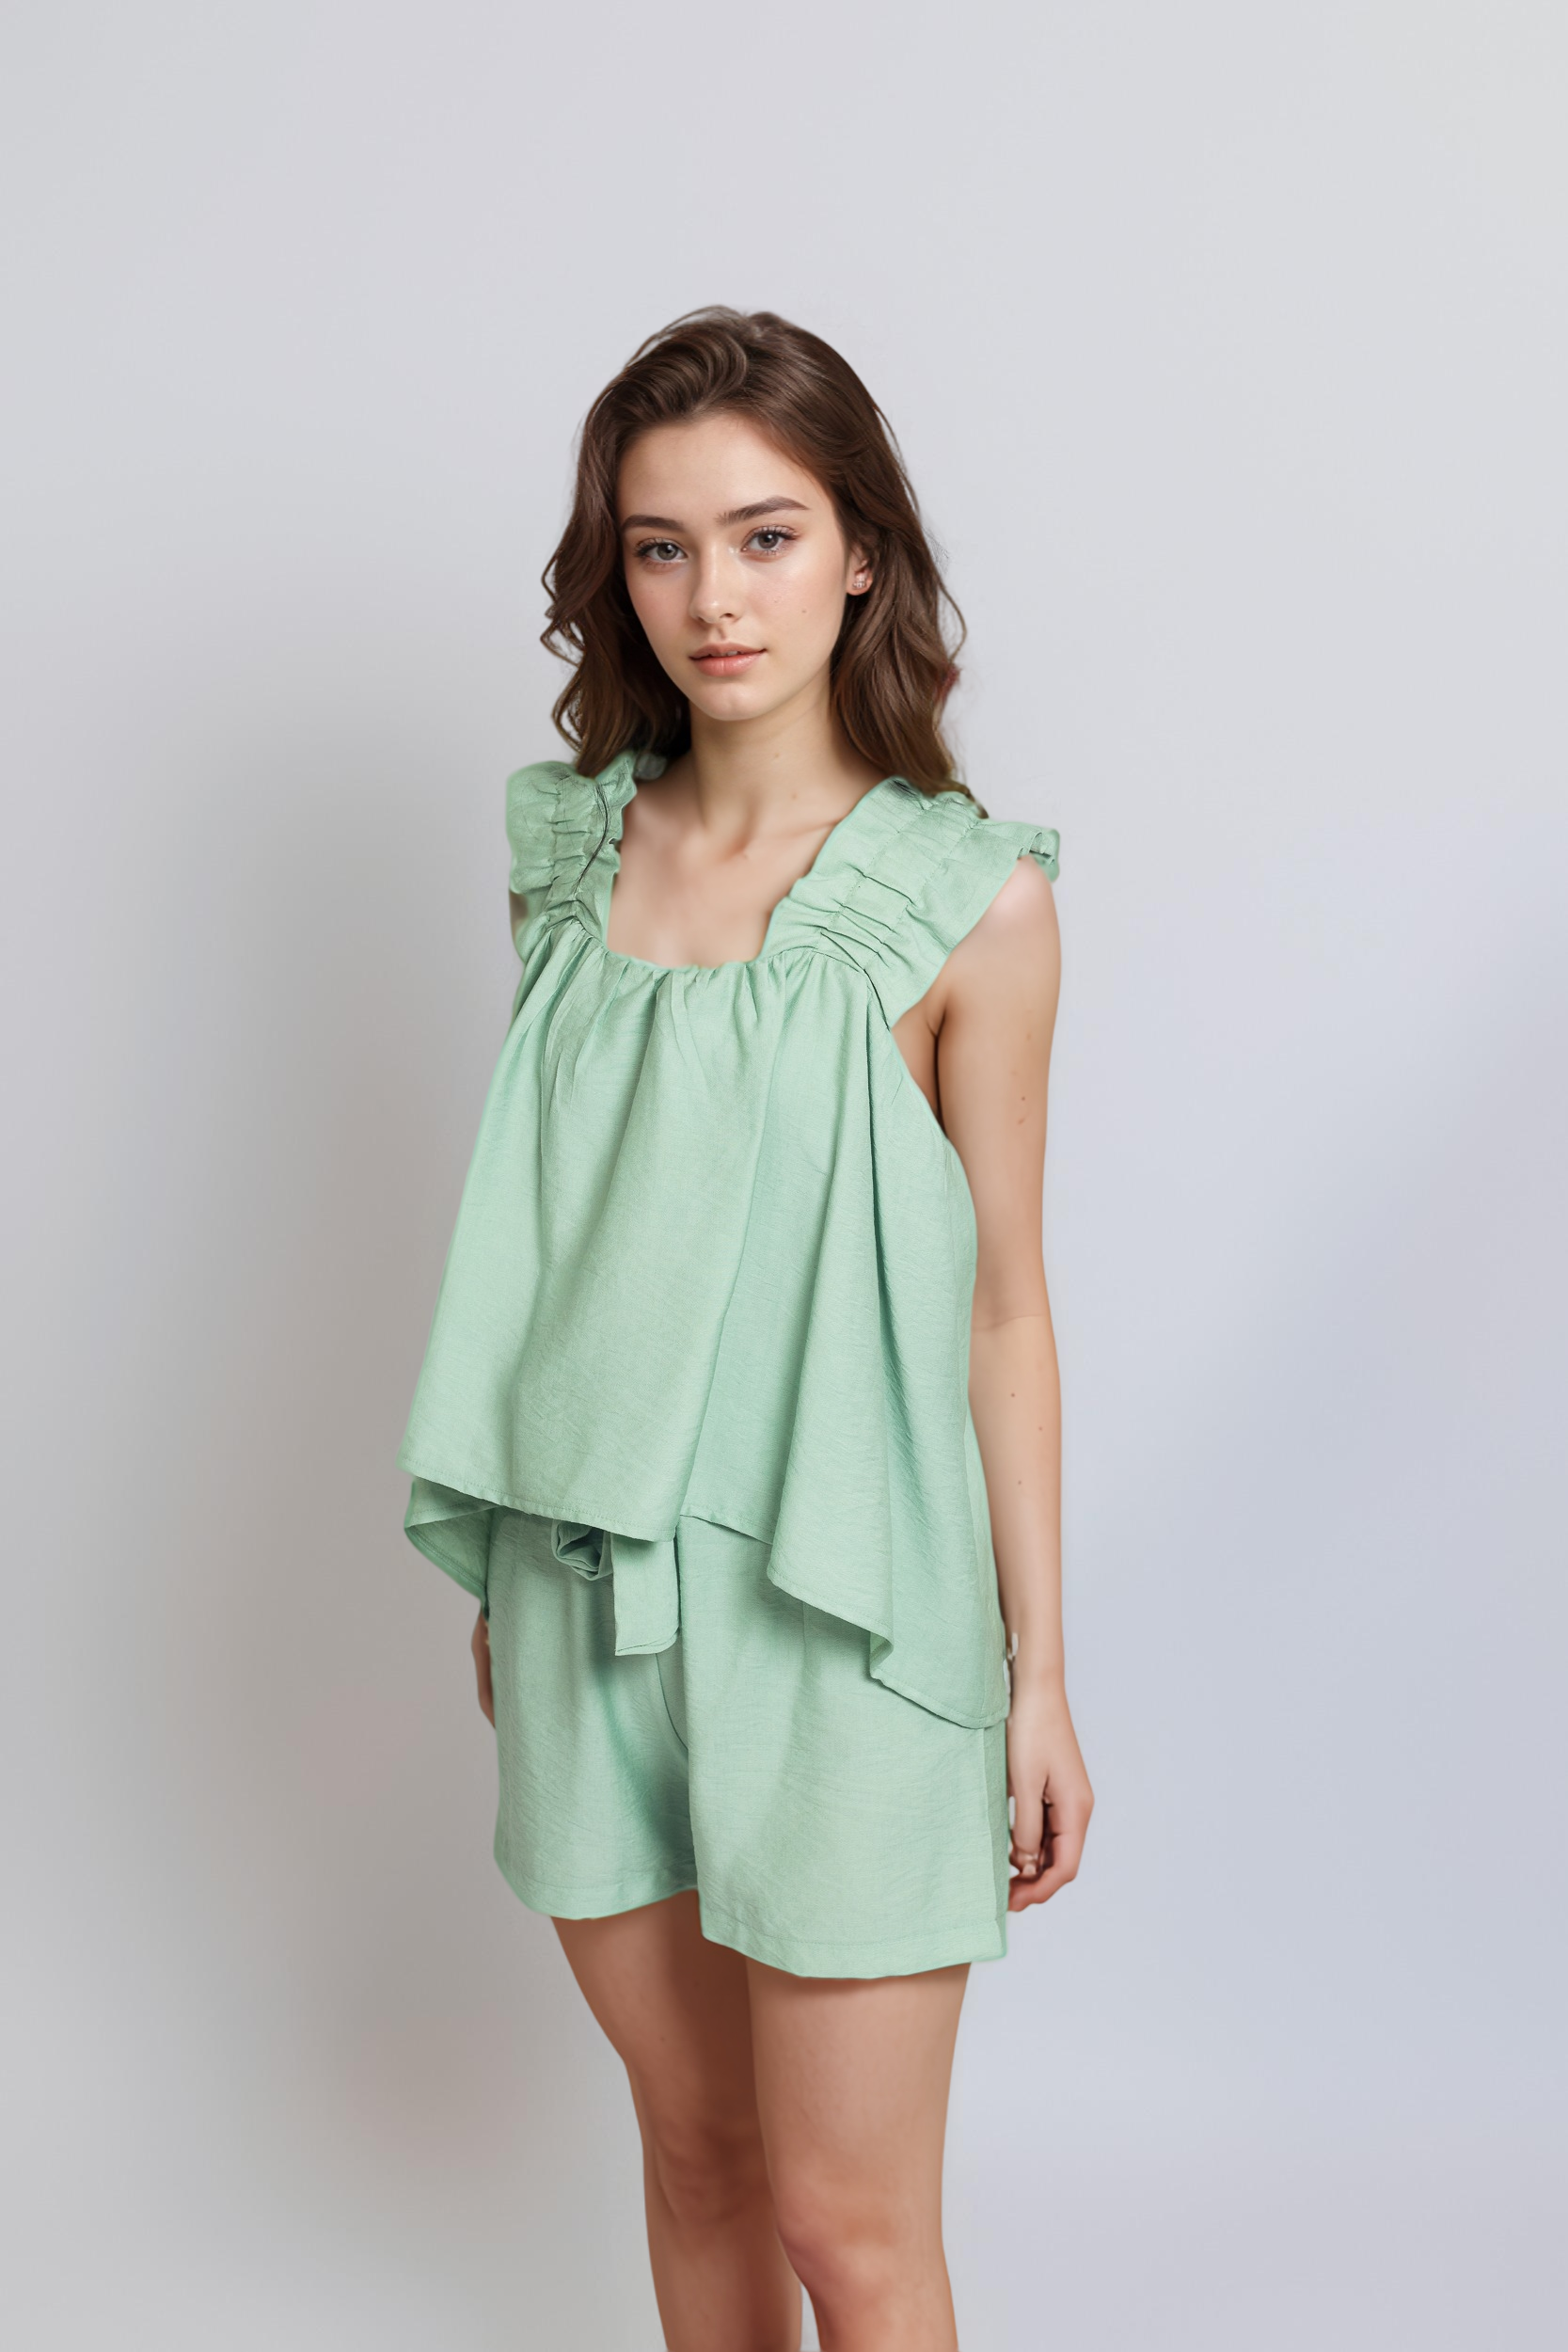 Ruffled Top + Short Set For Women - Mint Green